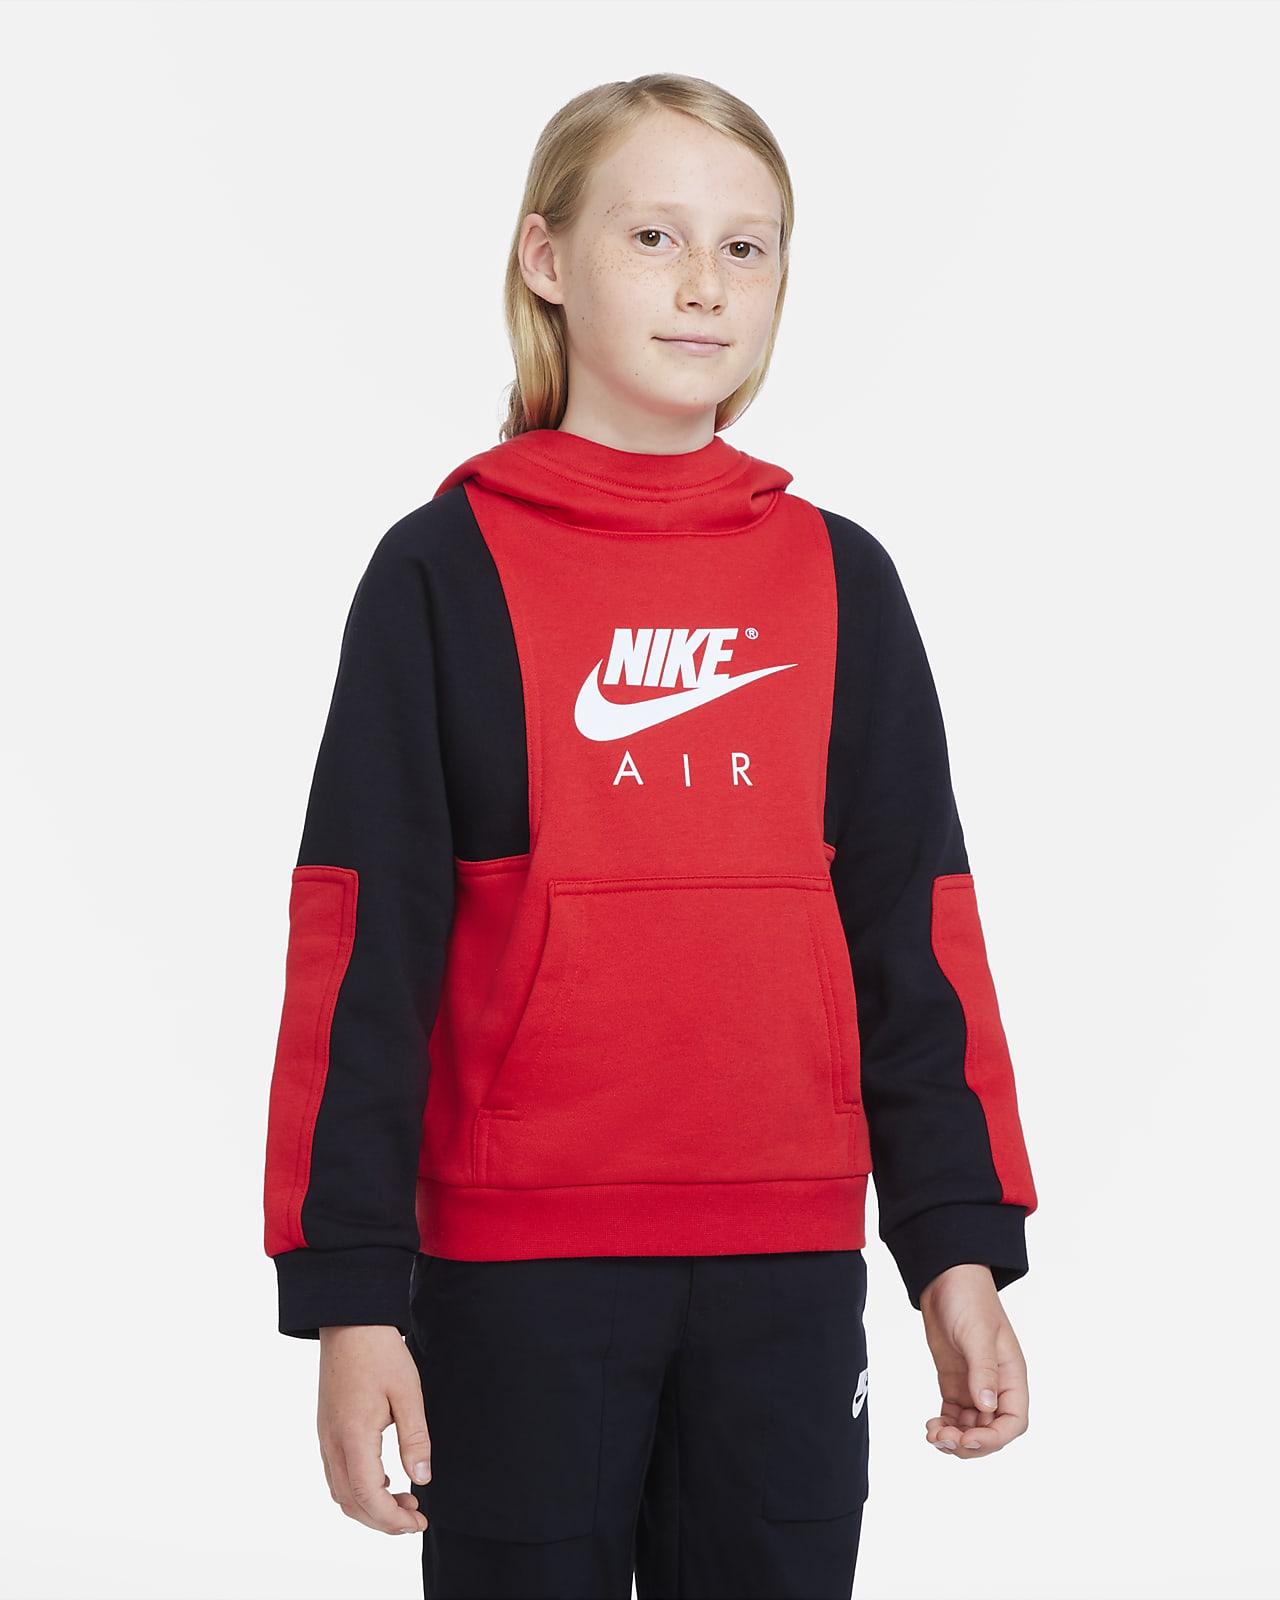 Nike Air Older Kids' (Boys') Pullover Hoodie